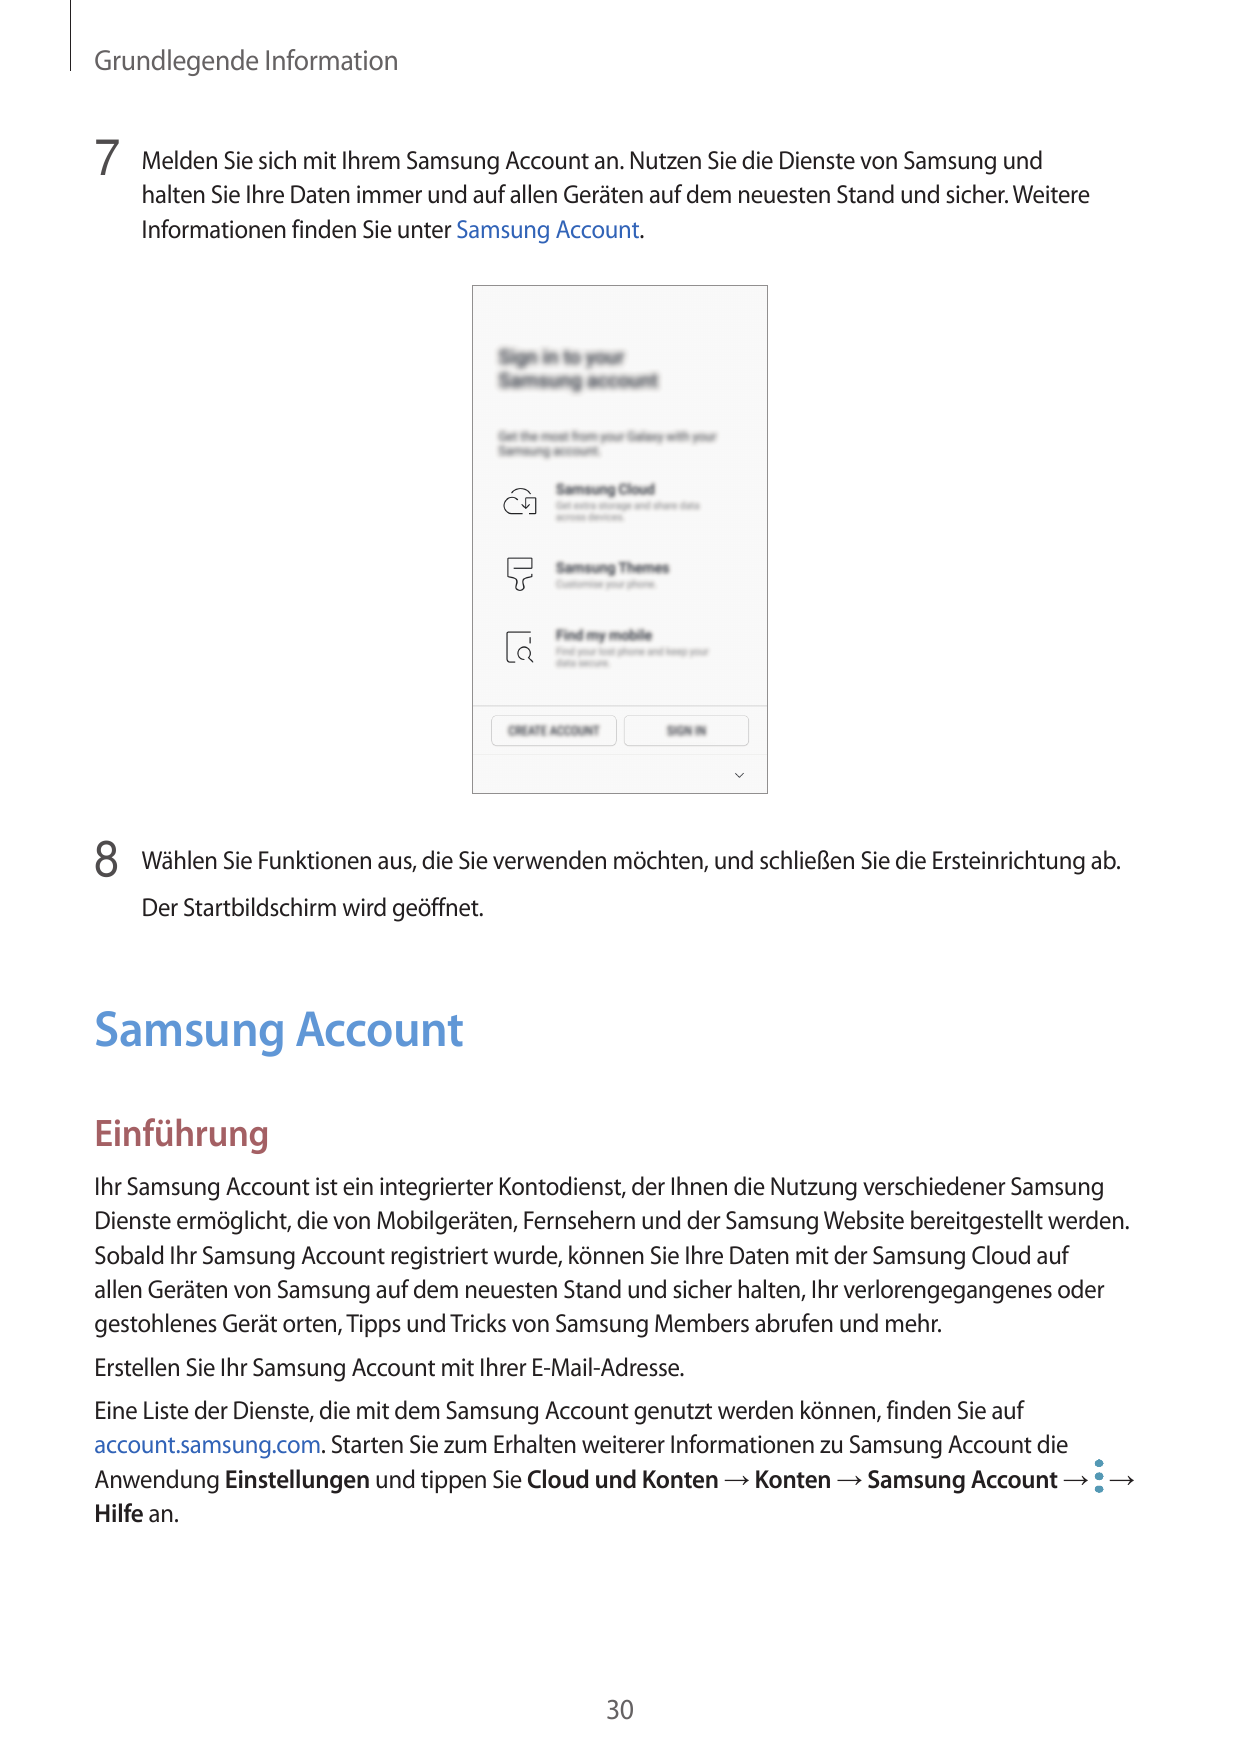 Grundlegende Information7 Melden Sie sich mit Ihrem Samsung Account an. Nutzen Sie die Dienste von Samsung undhalten Sie Ihre Da